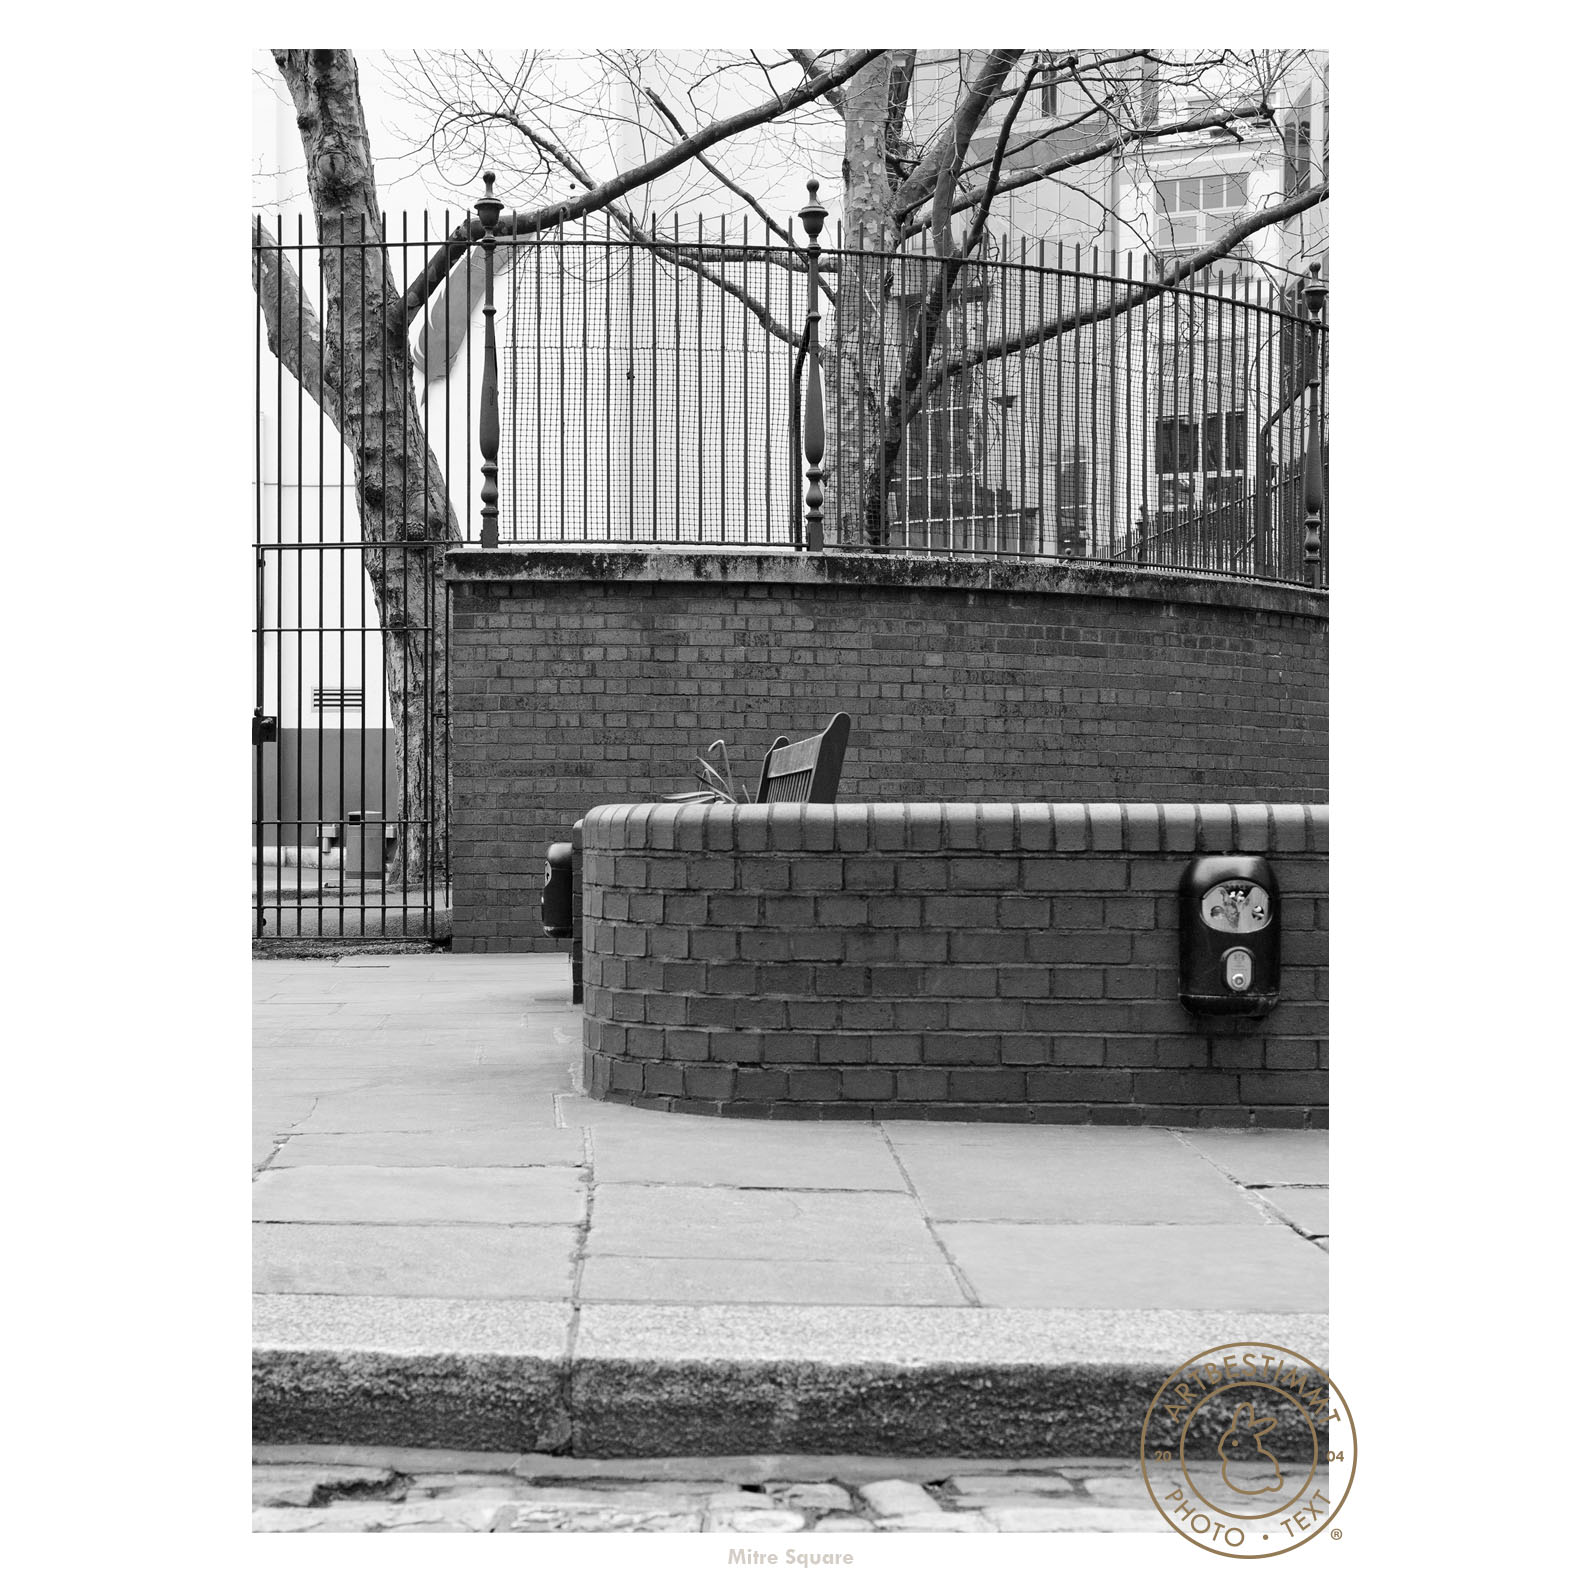 Casebook: Whitechapel, Jack the Ripper, Mitre Square, London
Photo: Christina Rolf / Artbestimmt.photo
Es gelten die Allgemeinen Vertragsgrundlagen Fotodesign.